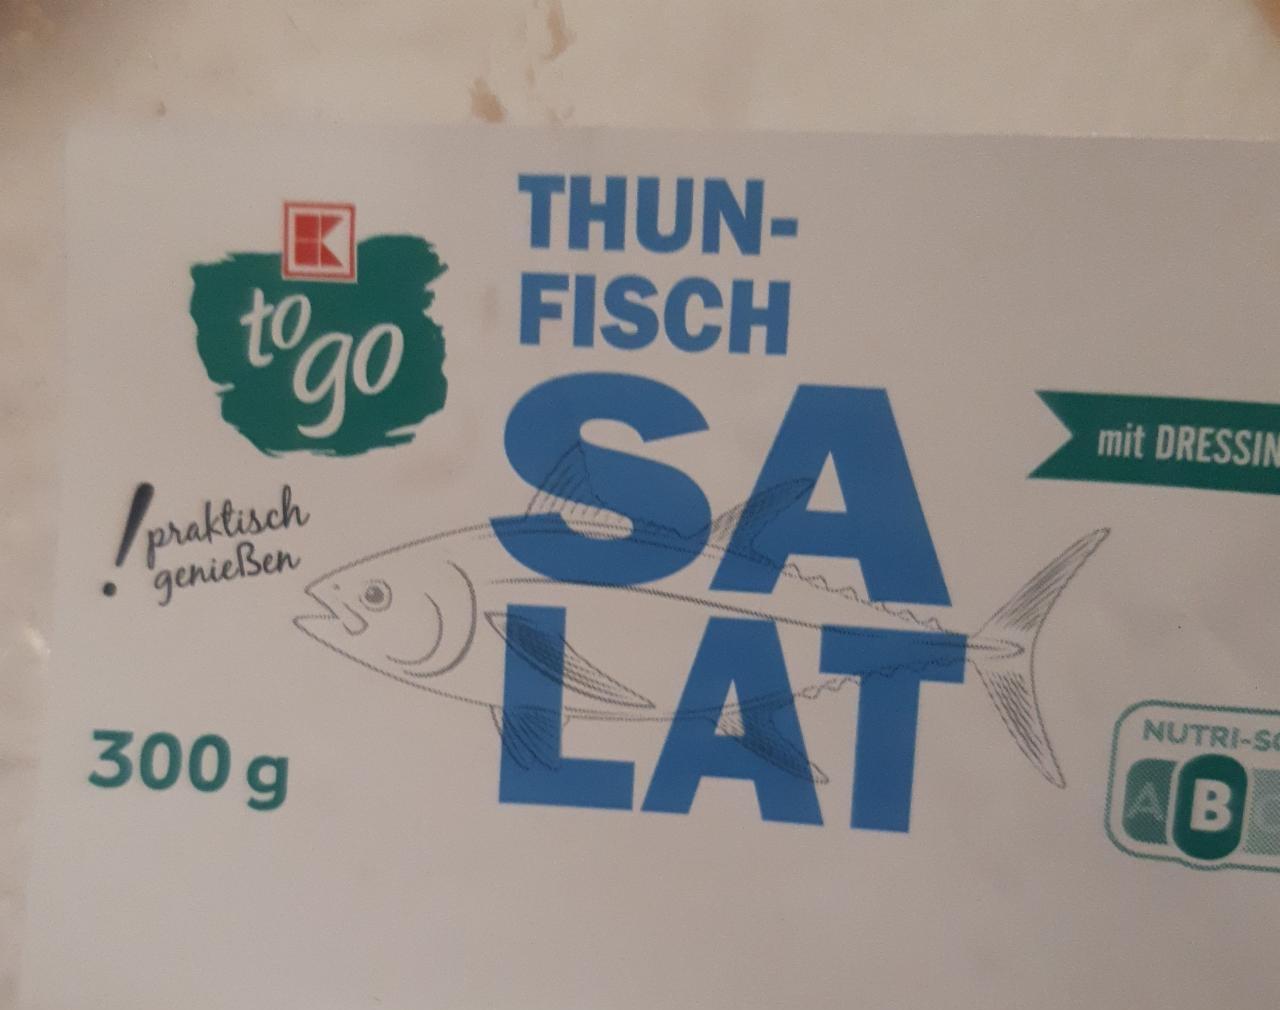 Zdjęcia - Thunfisch salat mit dressing K-to go